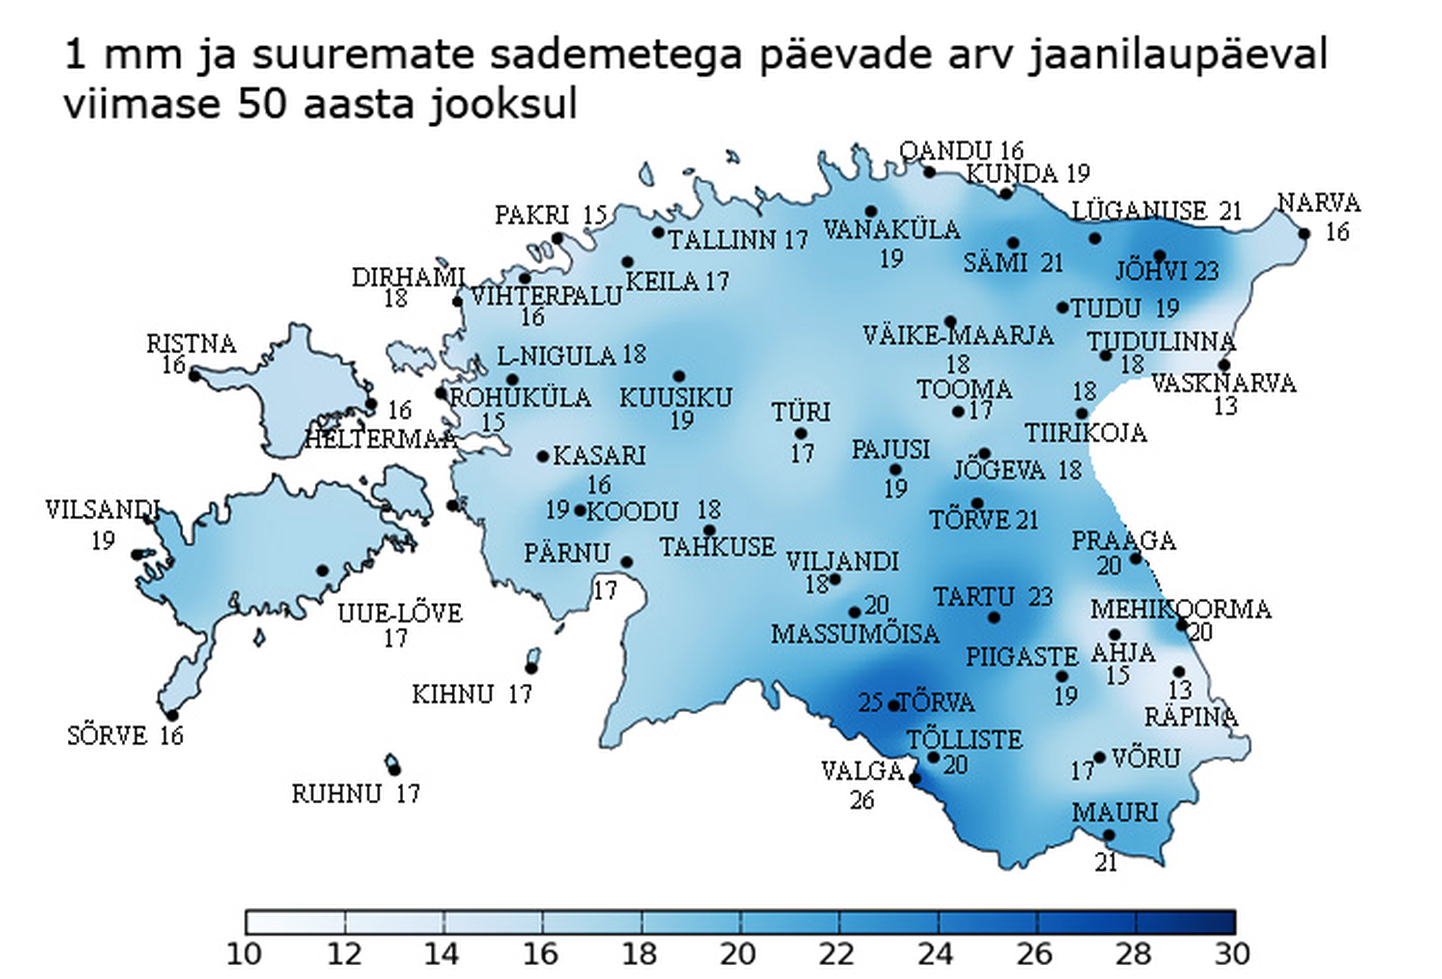 Sajuste jaanilaupäevade arv Eesti eri paigus viimase 50 aasta jooksul.